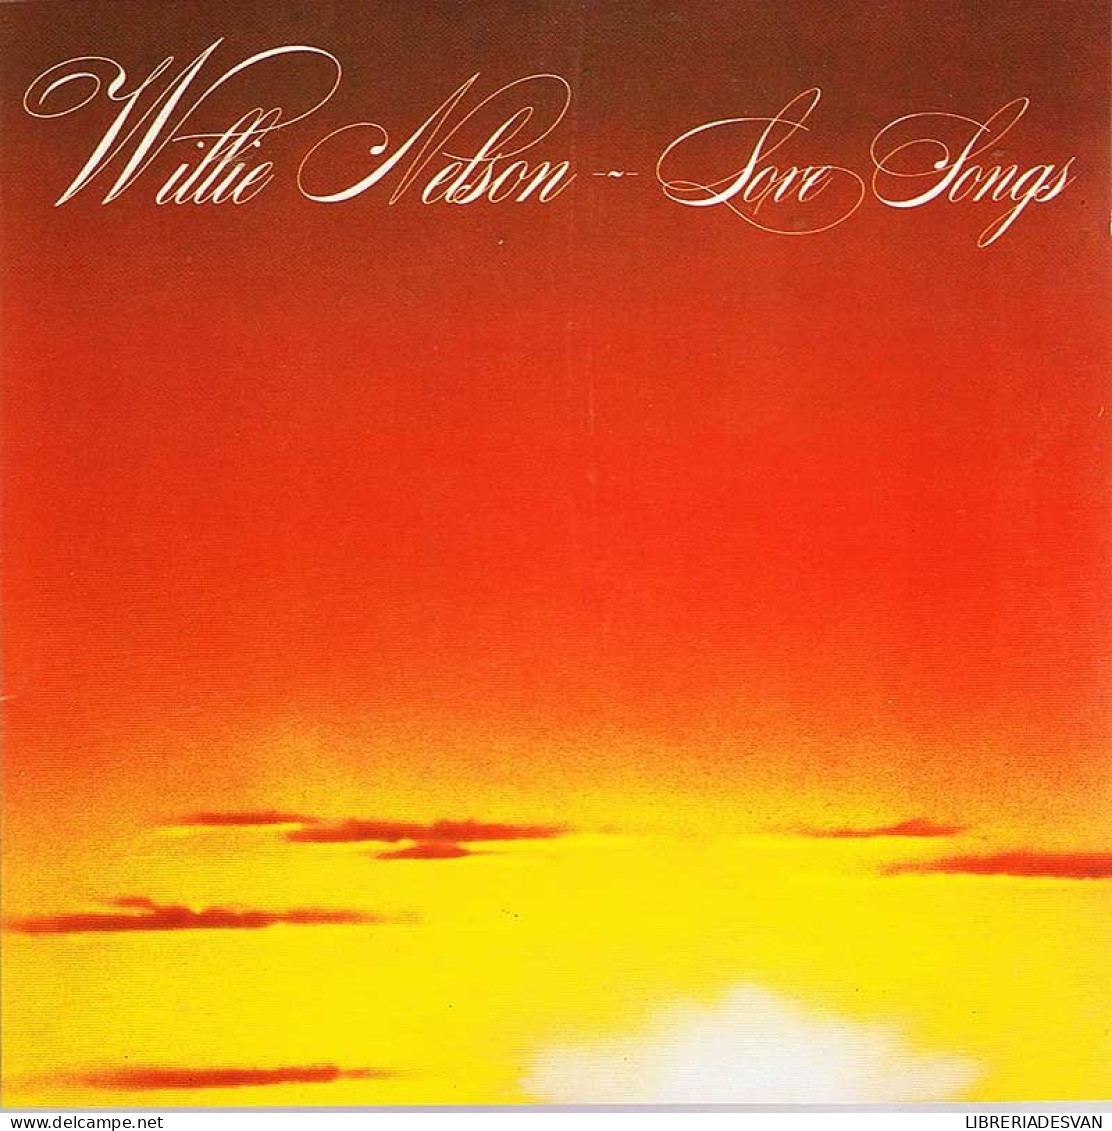 Willie Nelson - Love Songs. CD - Country Et Folk